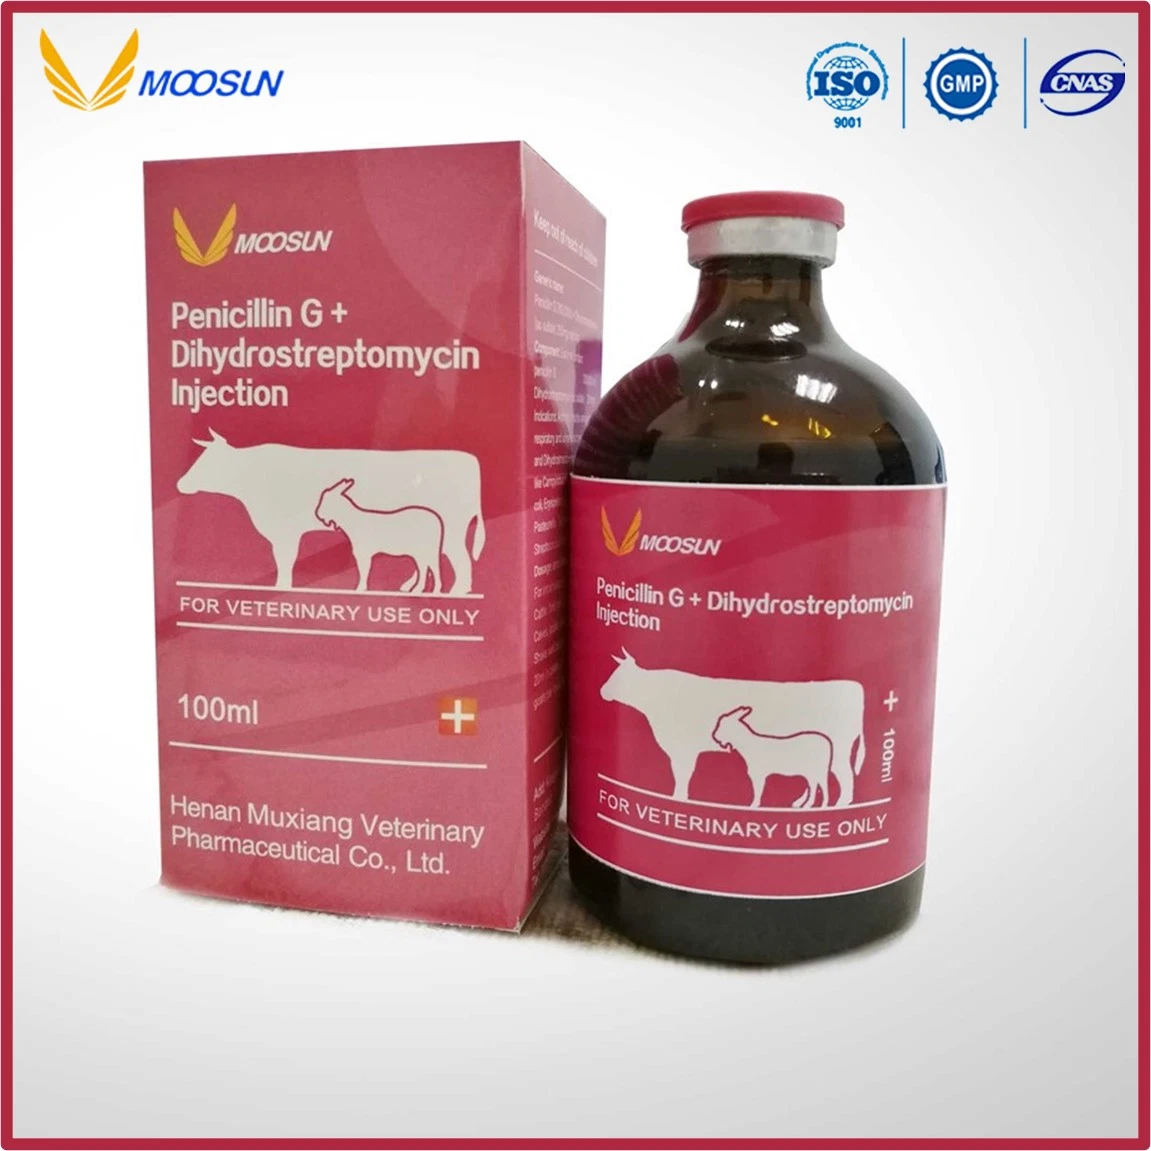 تصنيع حقنة البنسلين والطب البيطري والحقن من خلال ديهيدروستبتومايسين للحيوانات استخدم مع GMP ISO